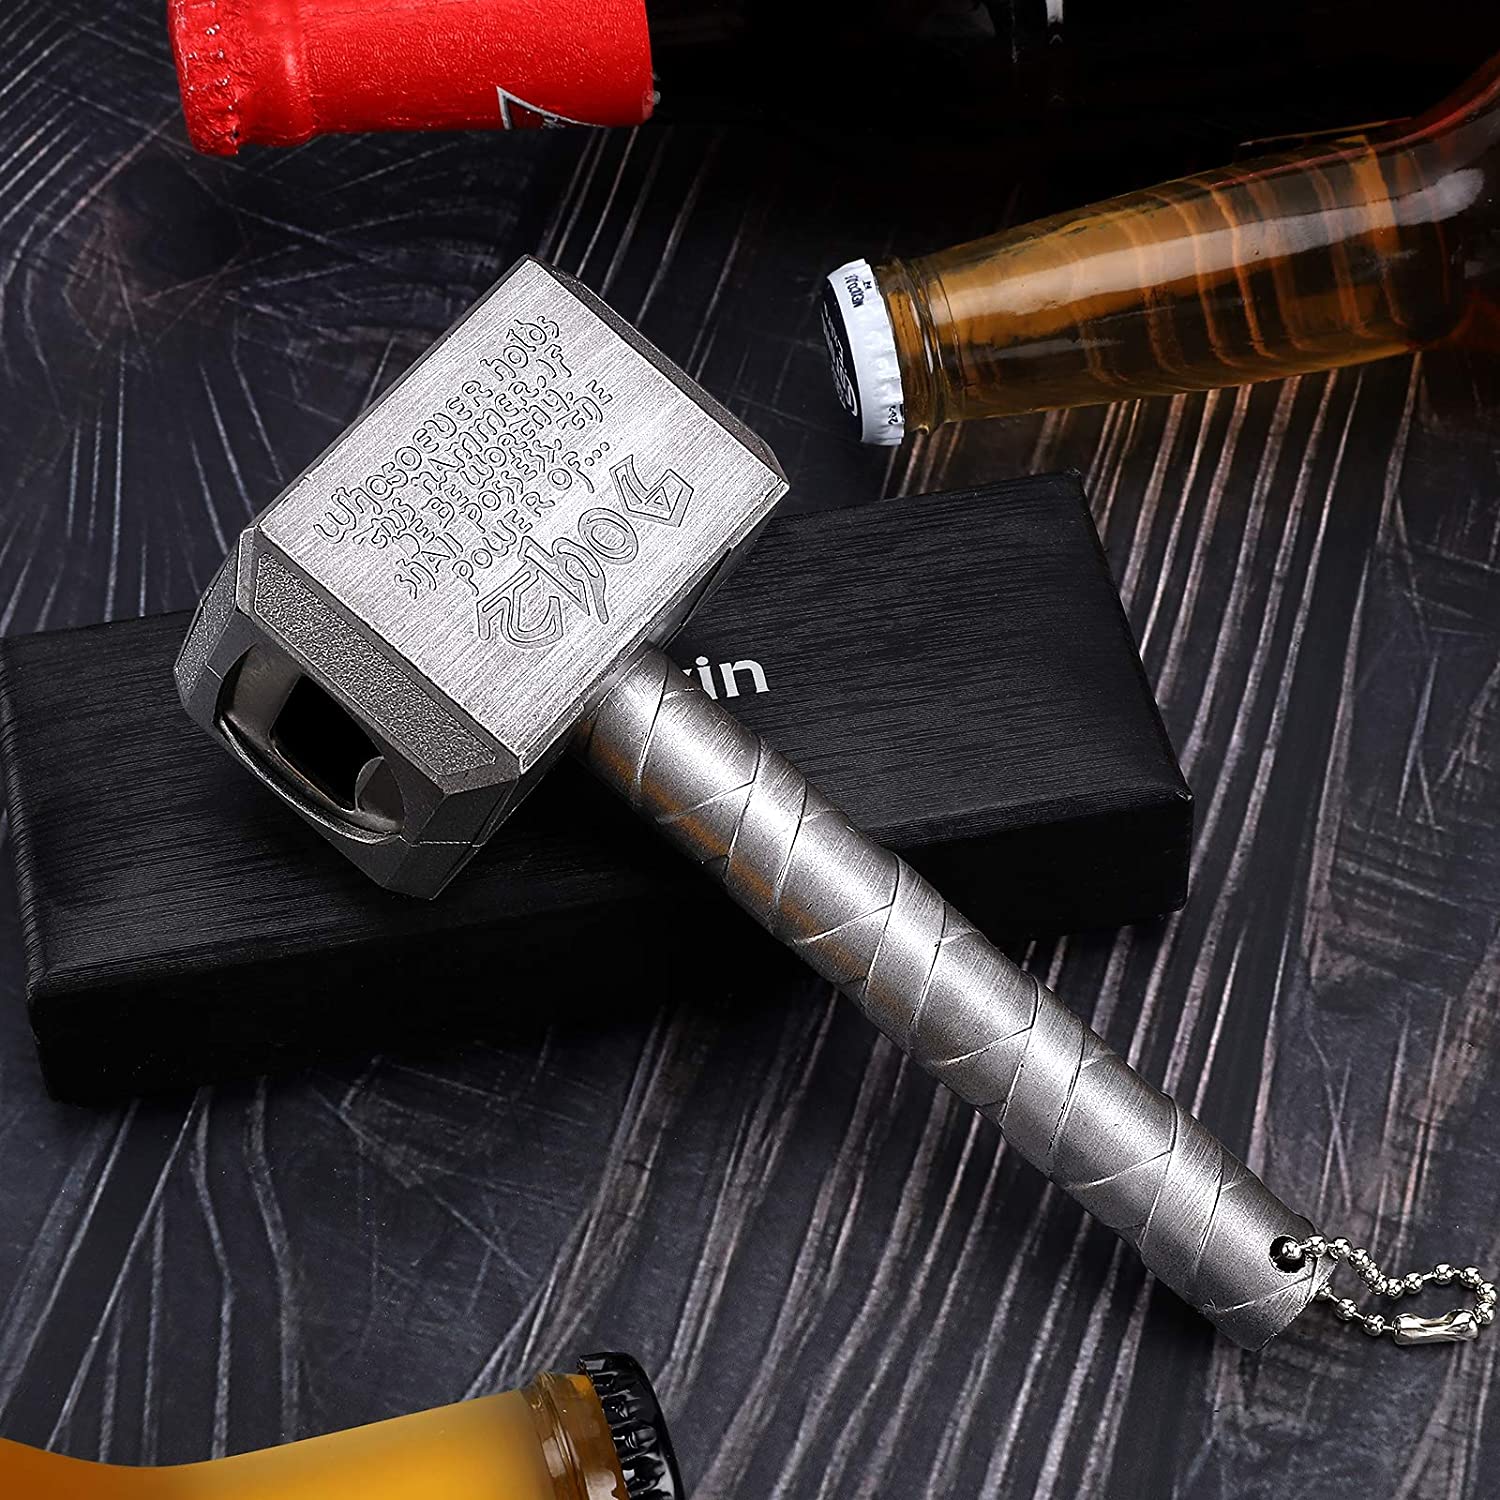 Thor's hammer bottle opener